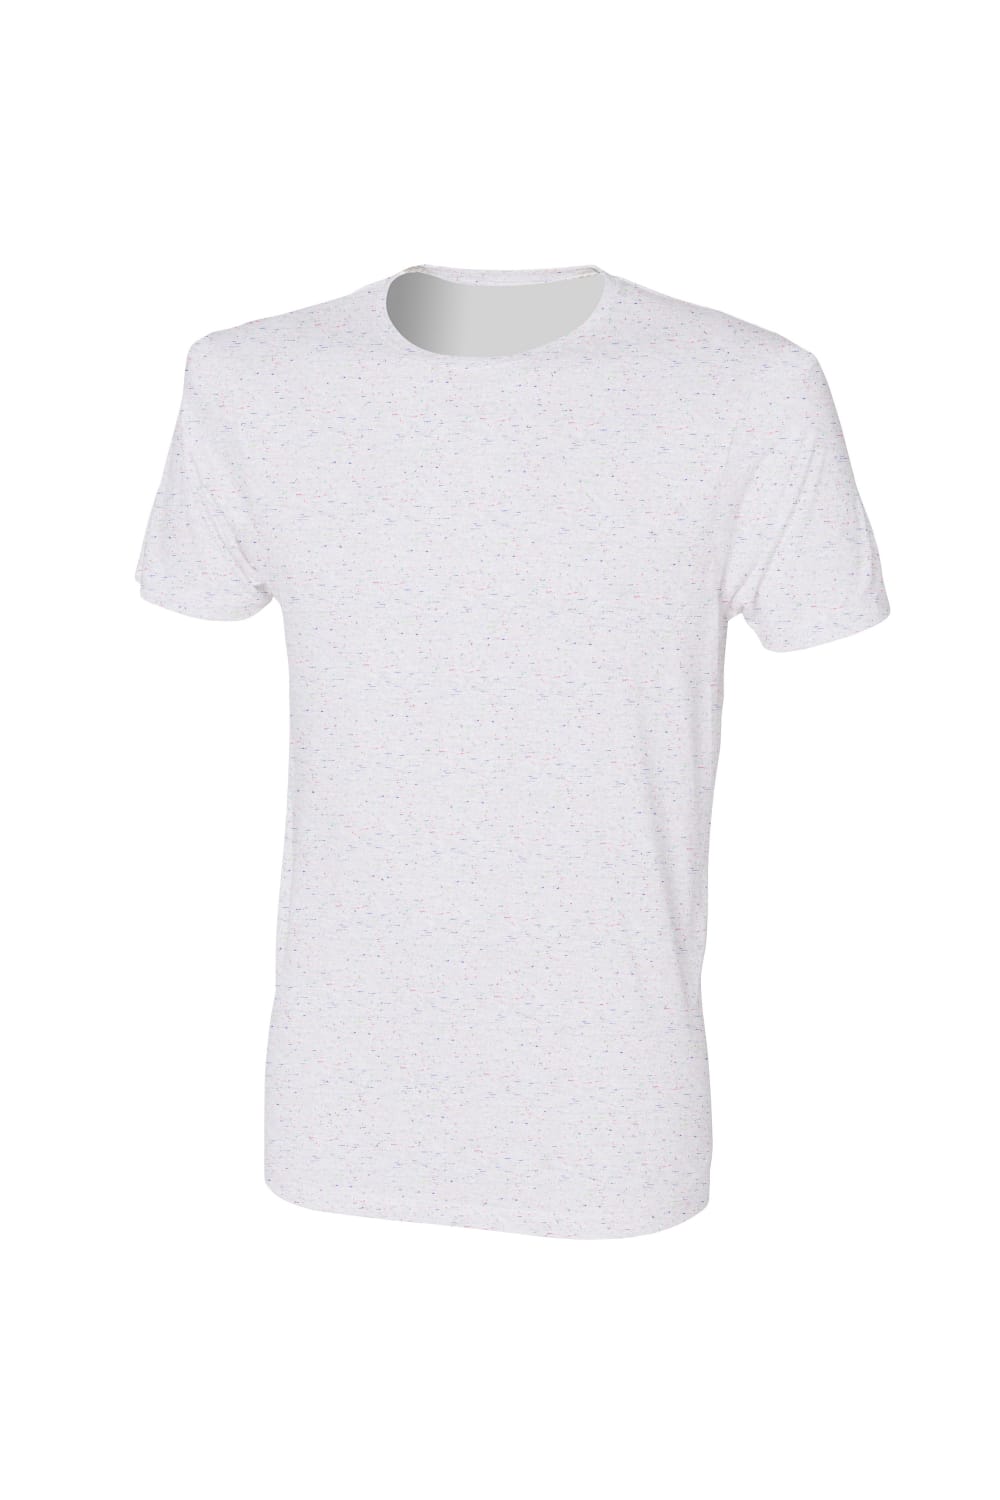 Skinni Fit Mens Fleck T-Shirt (White)